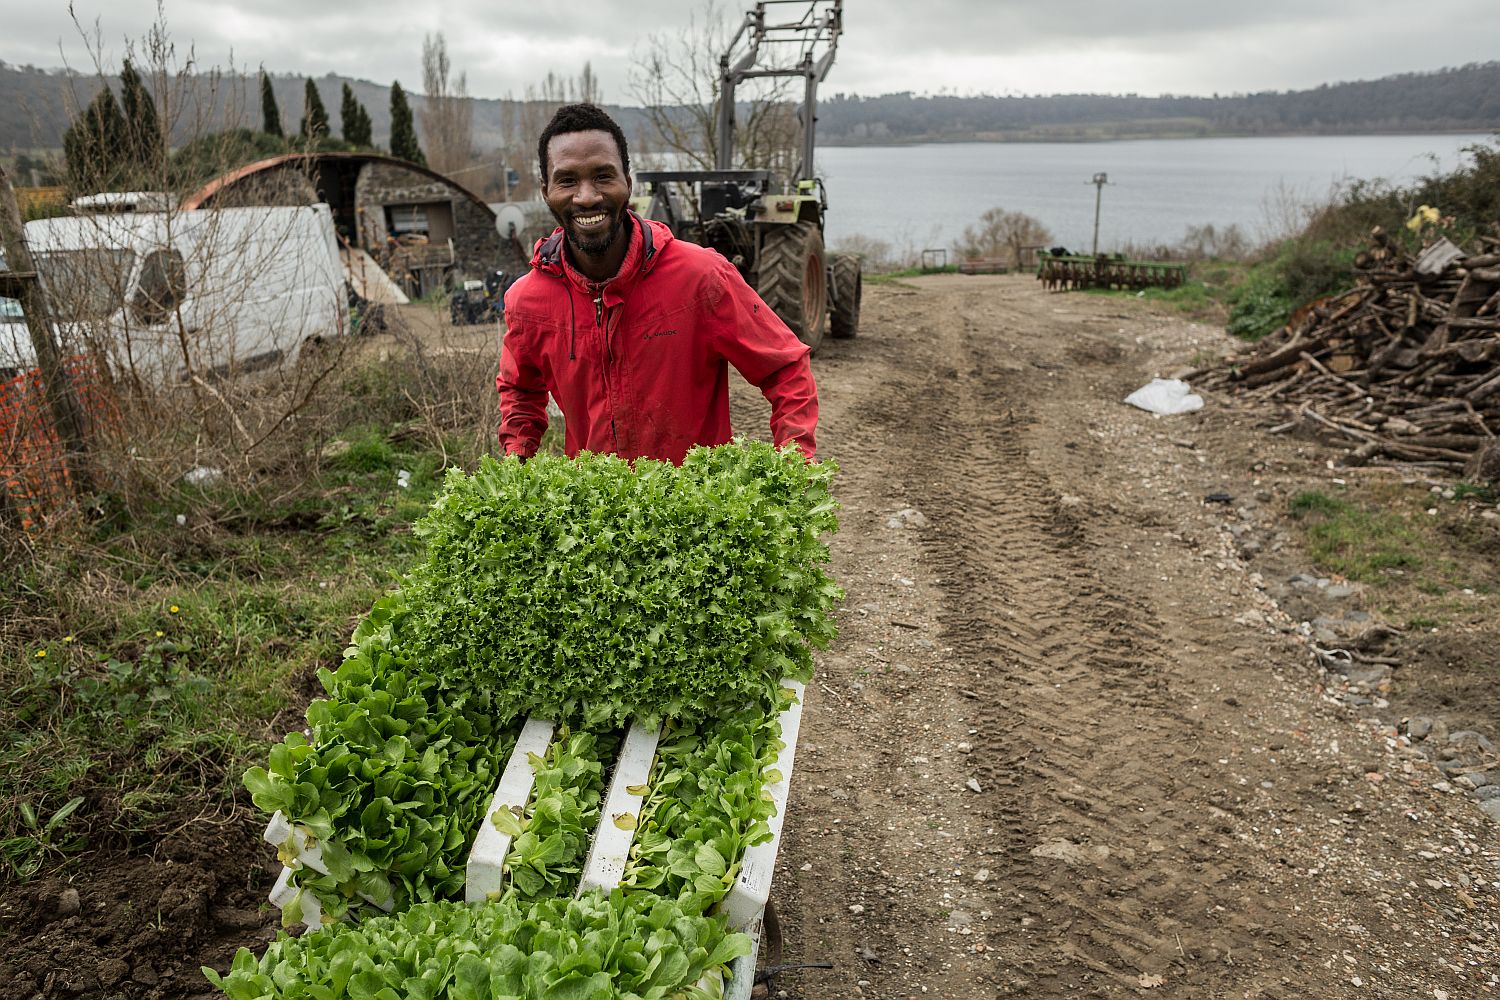 Afrikaanse migranten in Italië creëren eigen job in landbouwcoöperatie